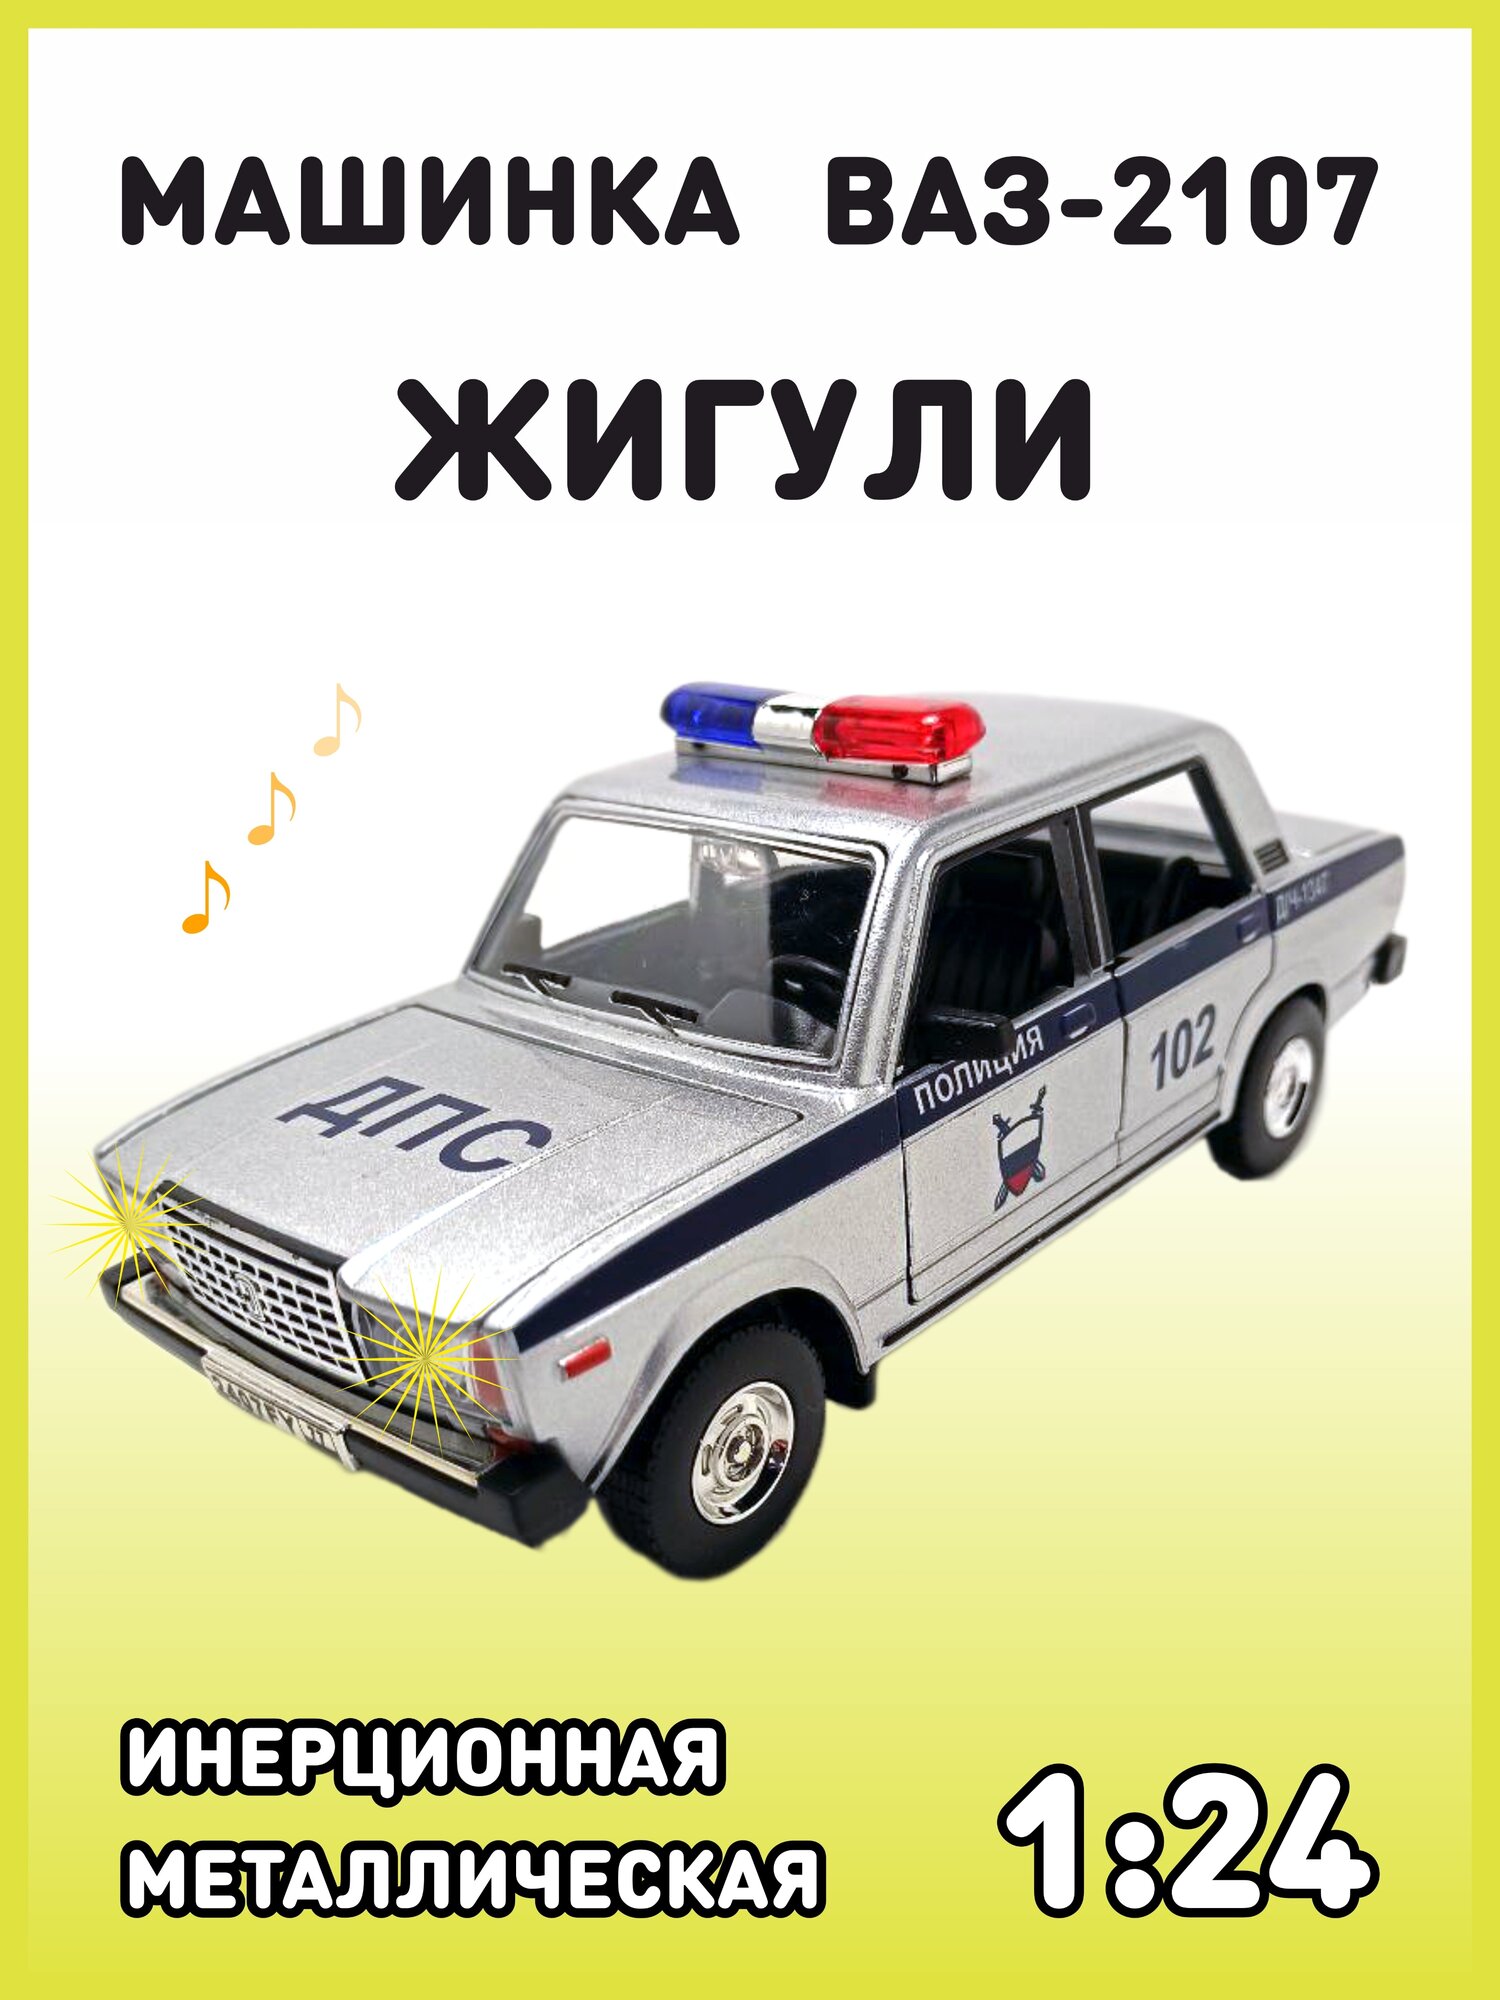 Модель автомобиля Жигули ВАЗ 2107 коллекционная металлическая игрушка масштаб 1:24 серо-синий